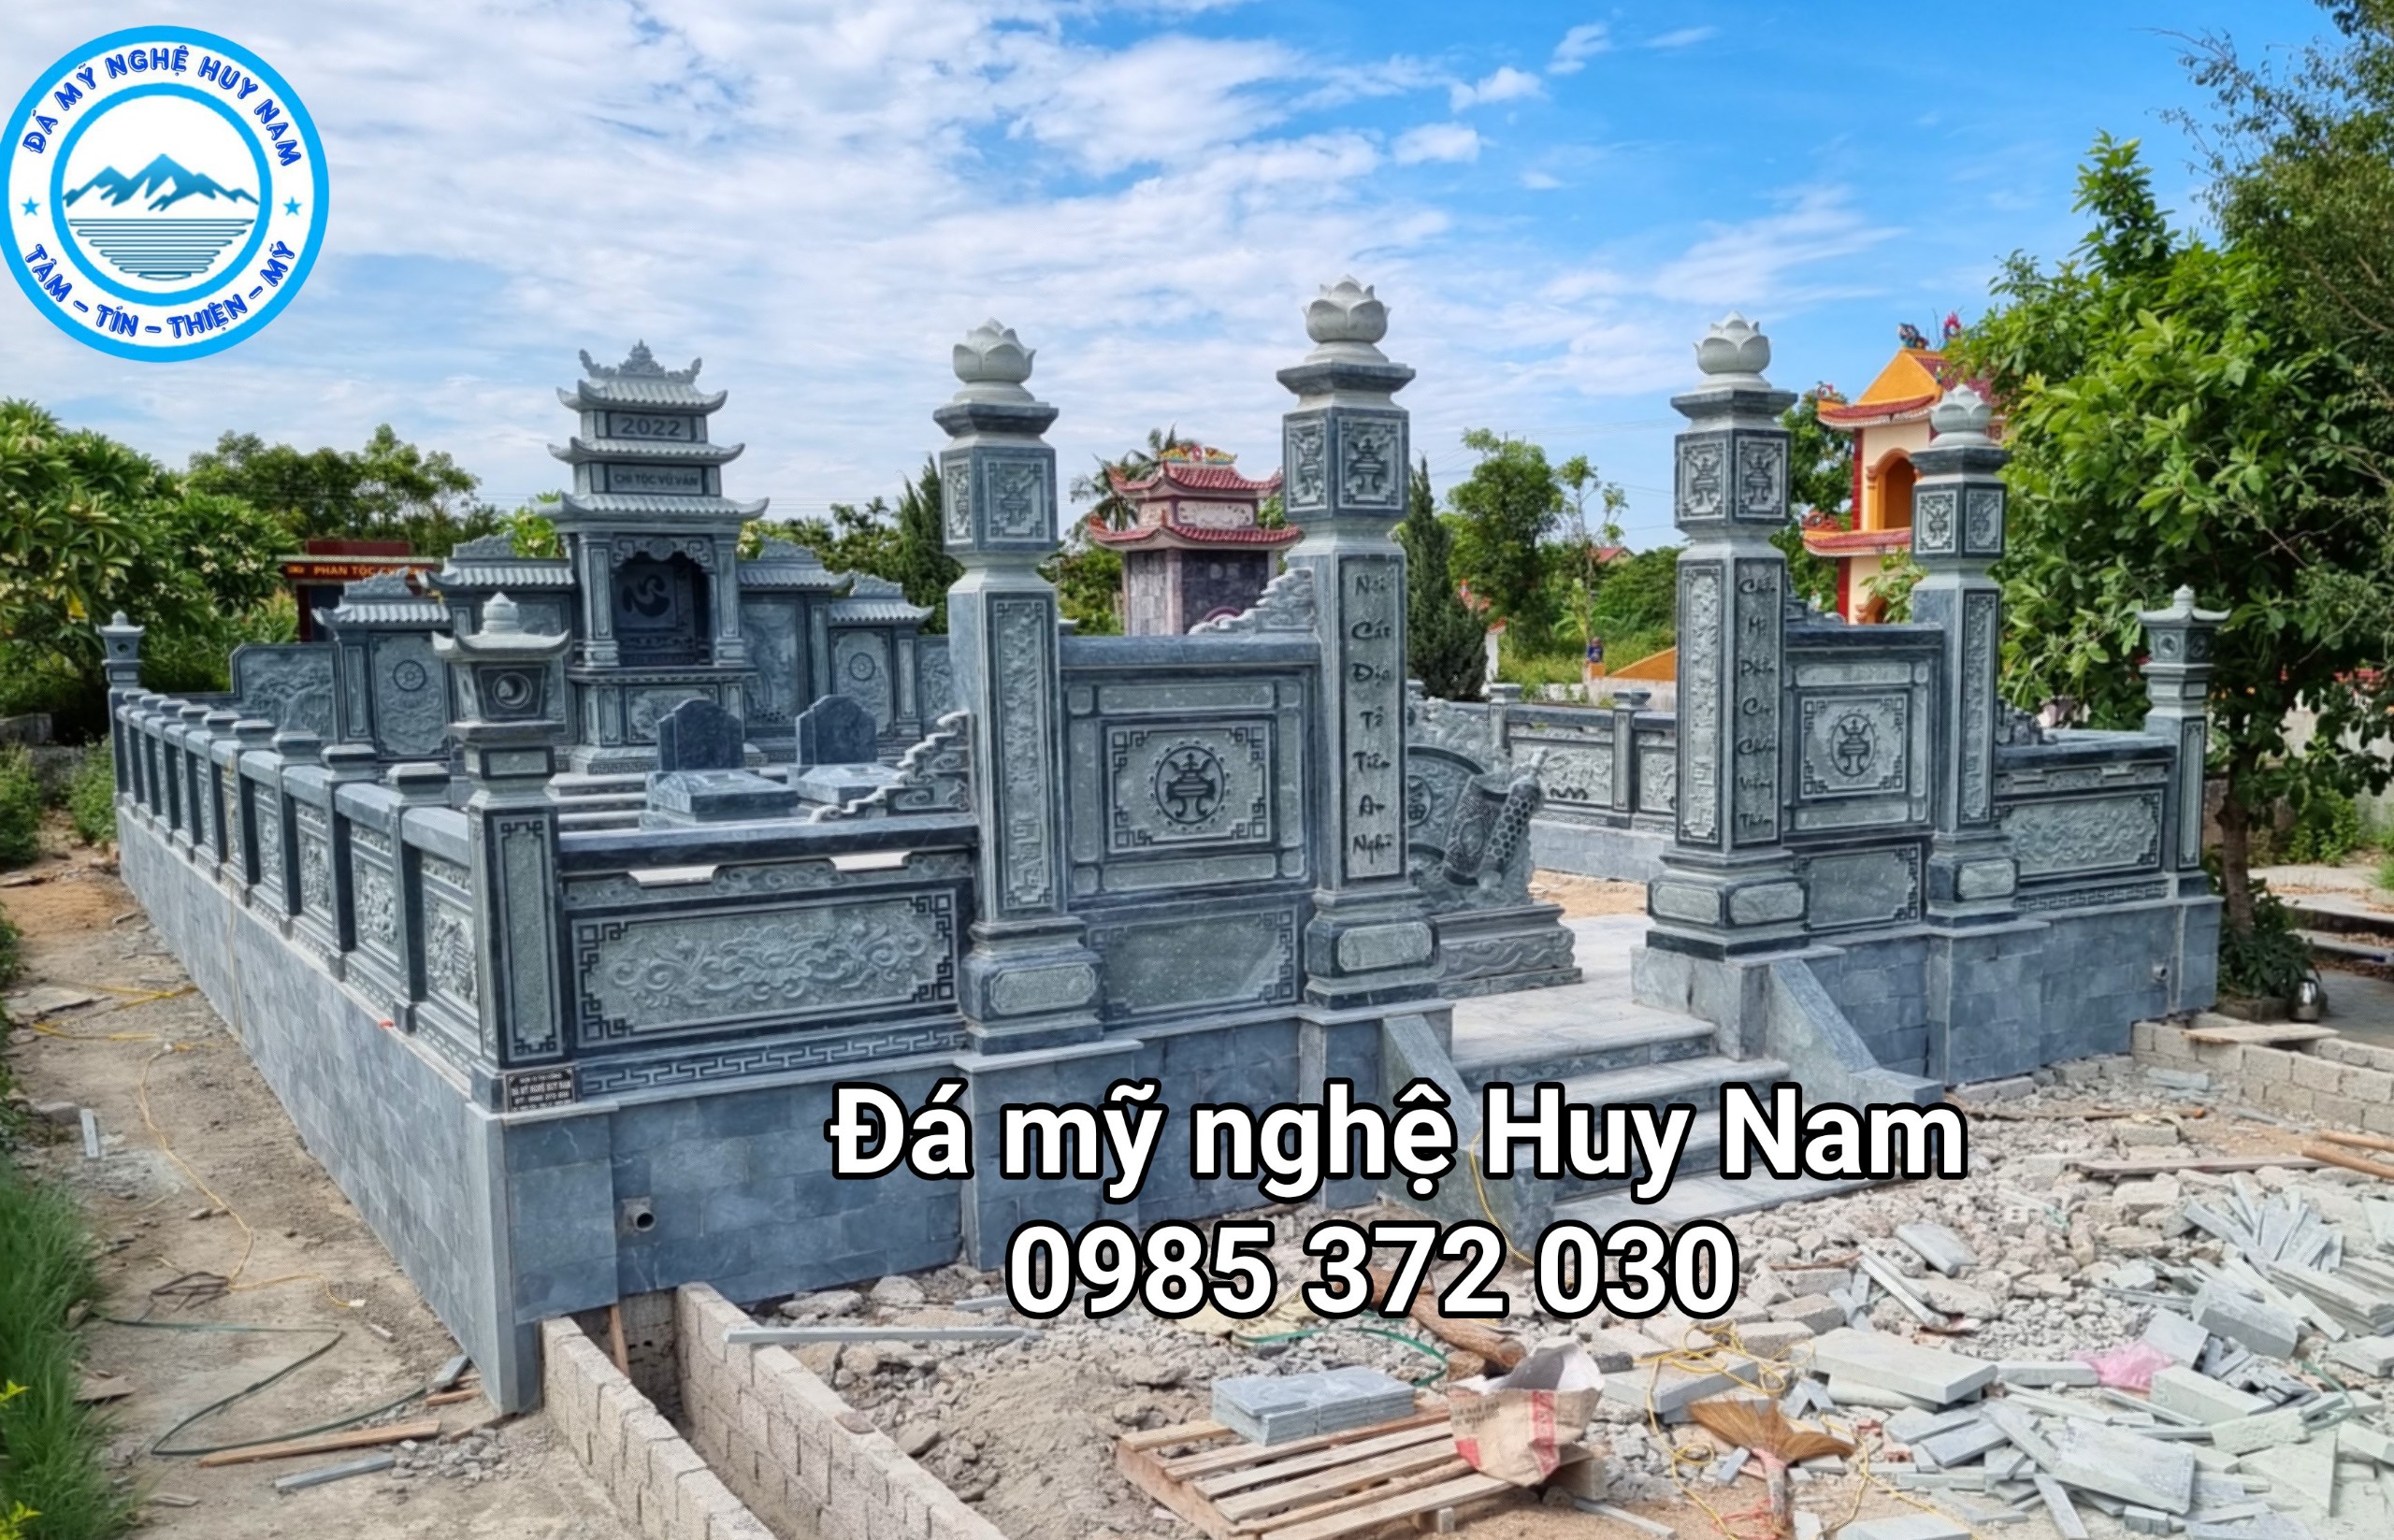 Khu lăng mộ đá gia đình chú Chinh Nghệ An